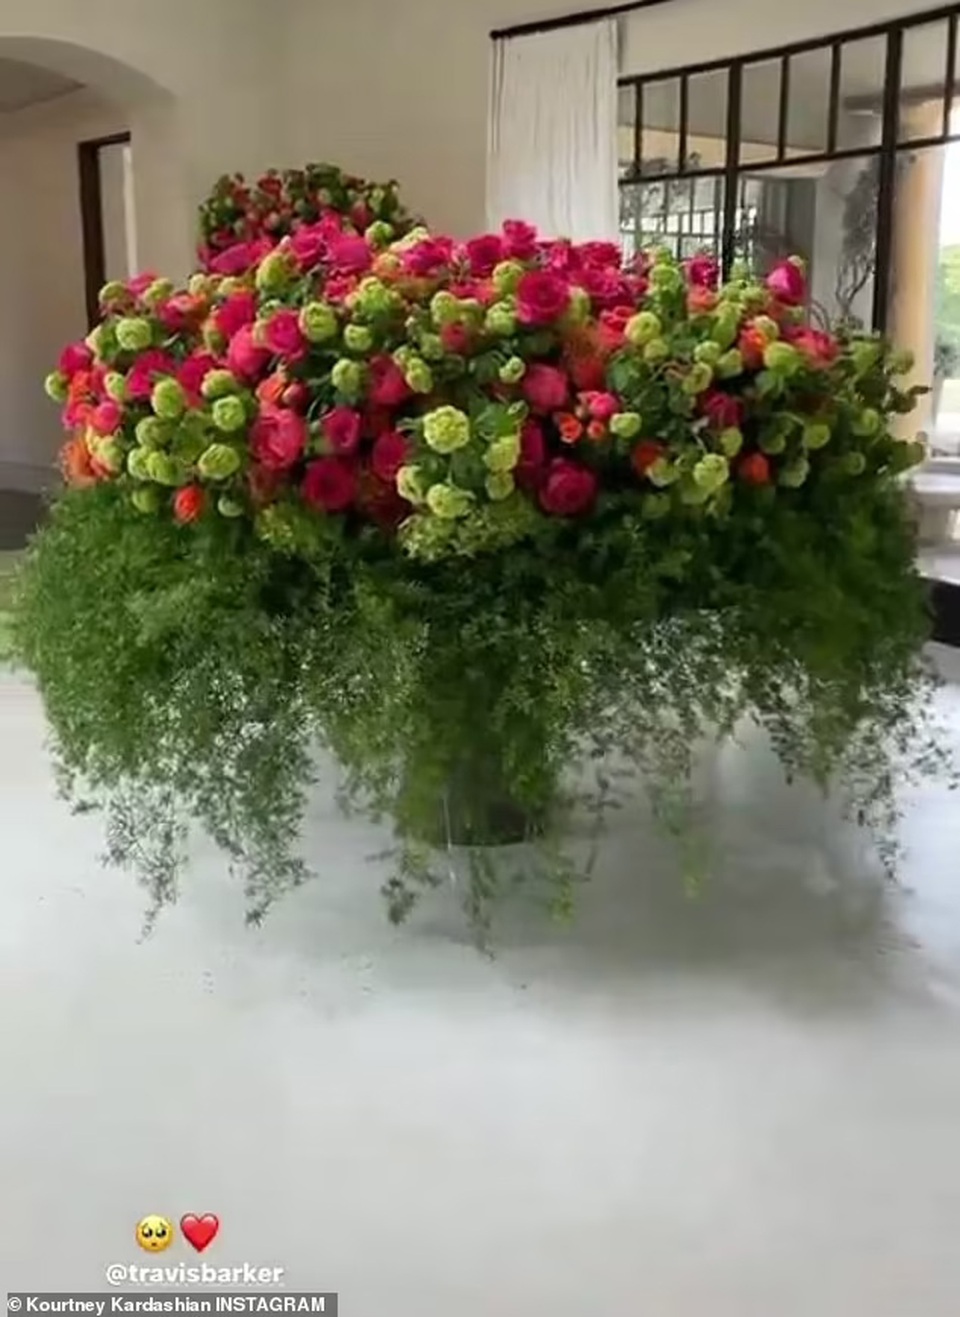 Boyfriend gave a flower house to Kourtney Kardashian - 1